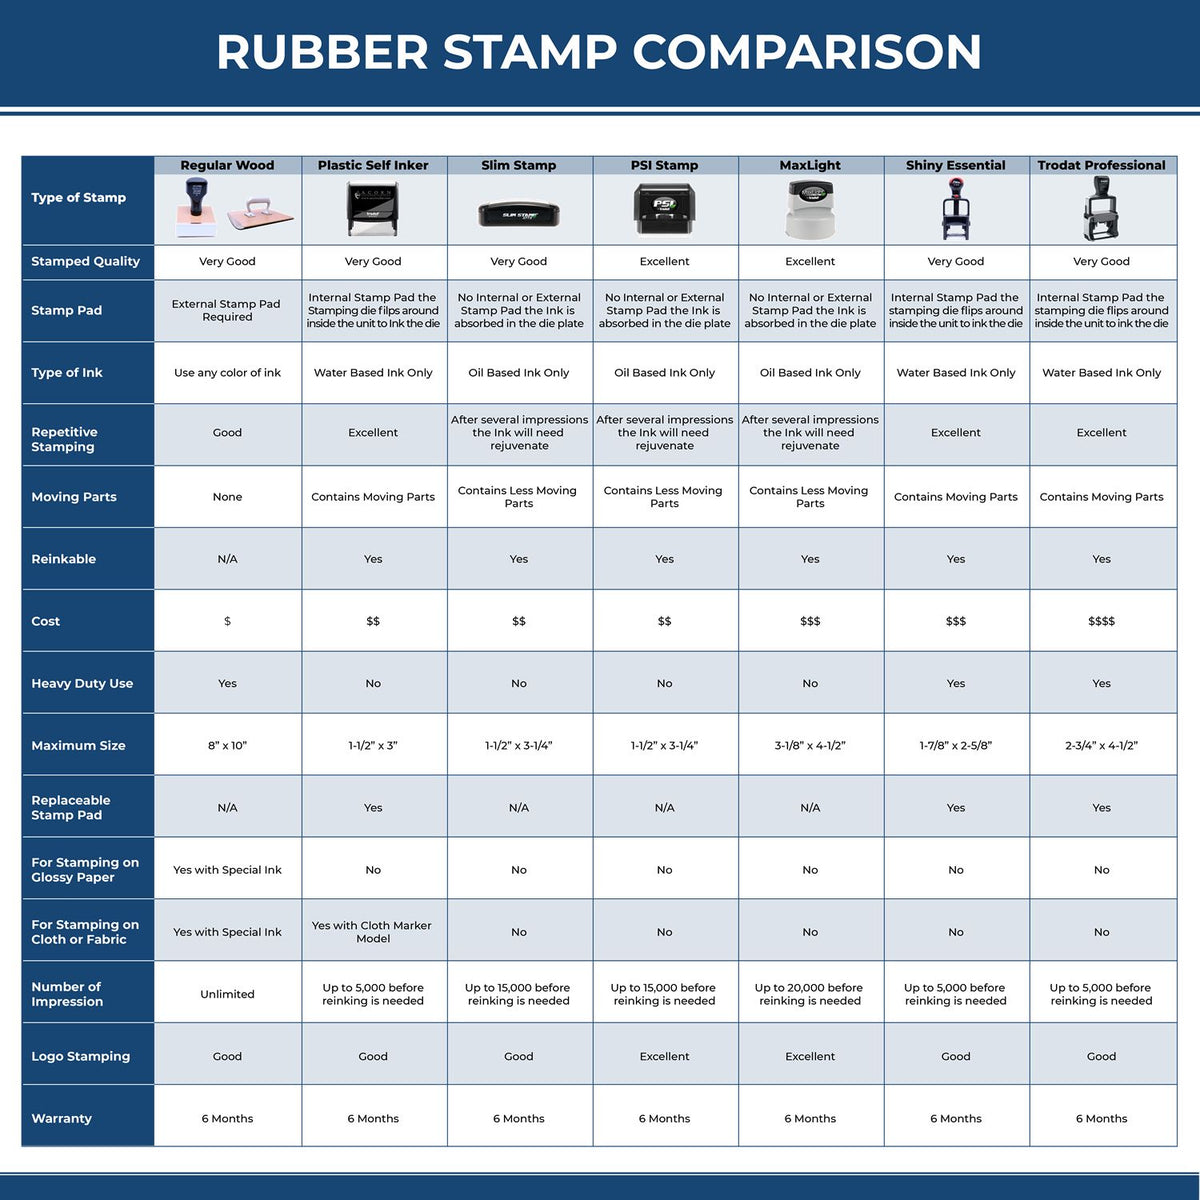 Real Estate Appraiser Regular Rubber Stamp of Seal 3005REA Rubber Stamp Comparison